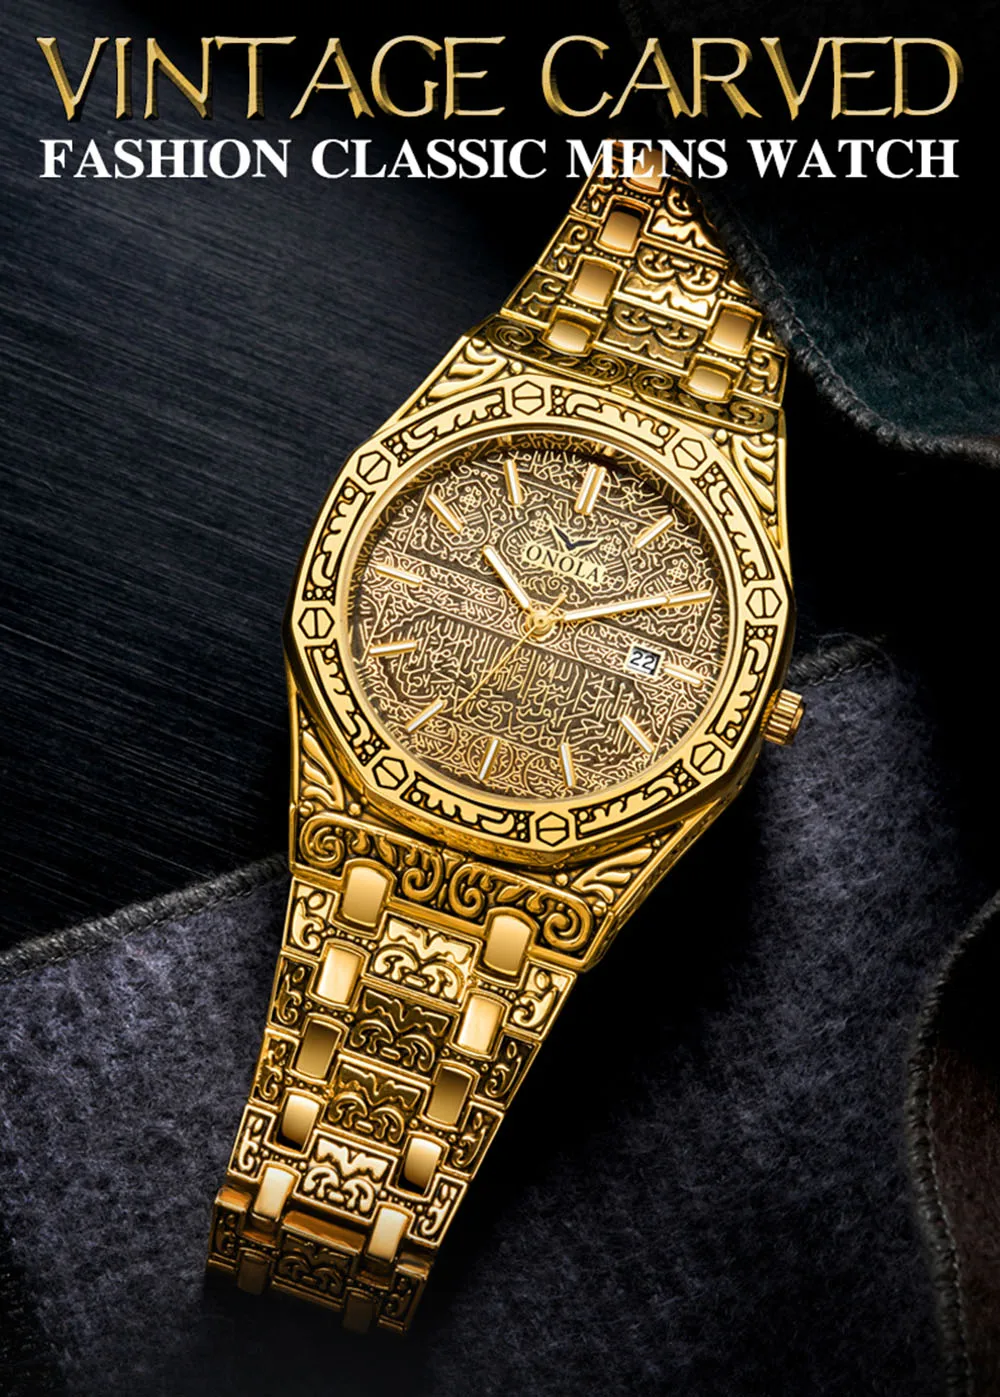 Waterproof Vintage Carved Watch Original Steel Band Wristwatch Fashion Classic Designer Luxury Golden Watch